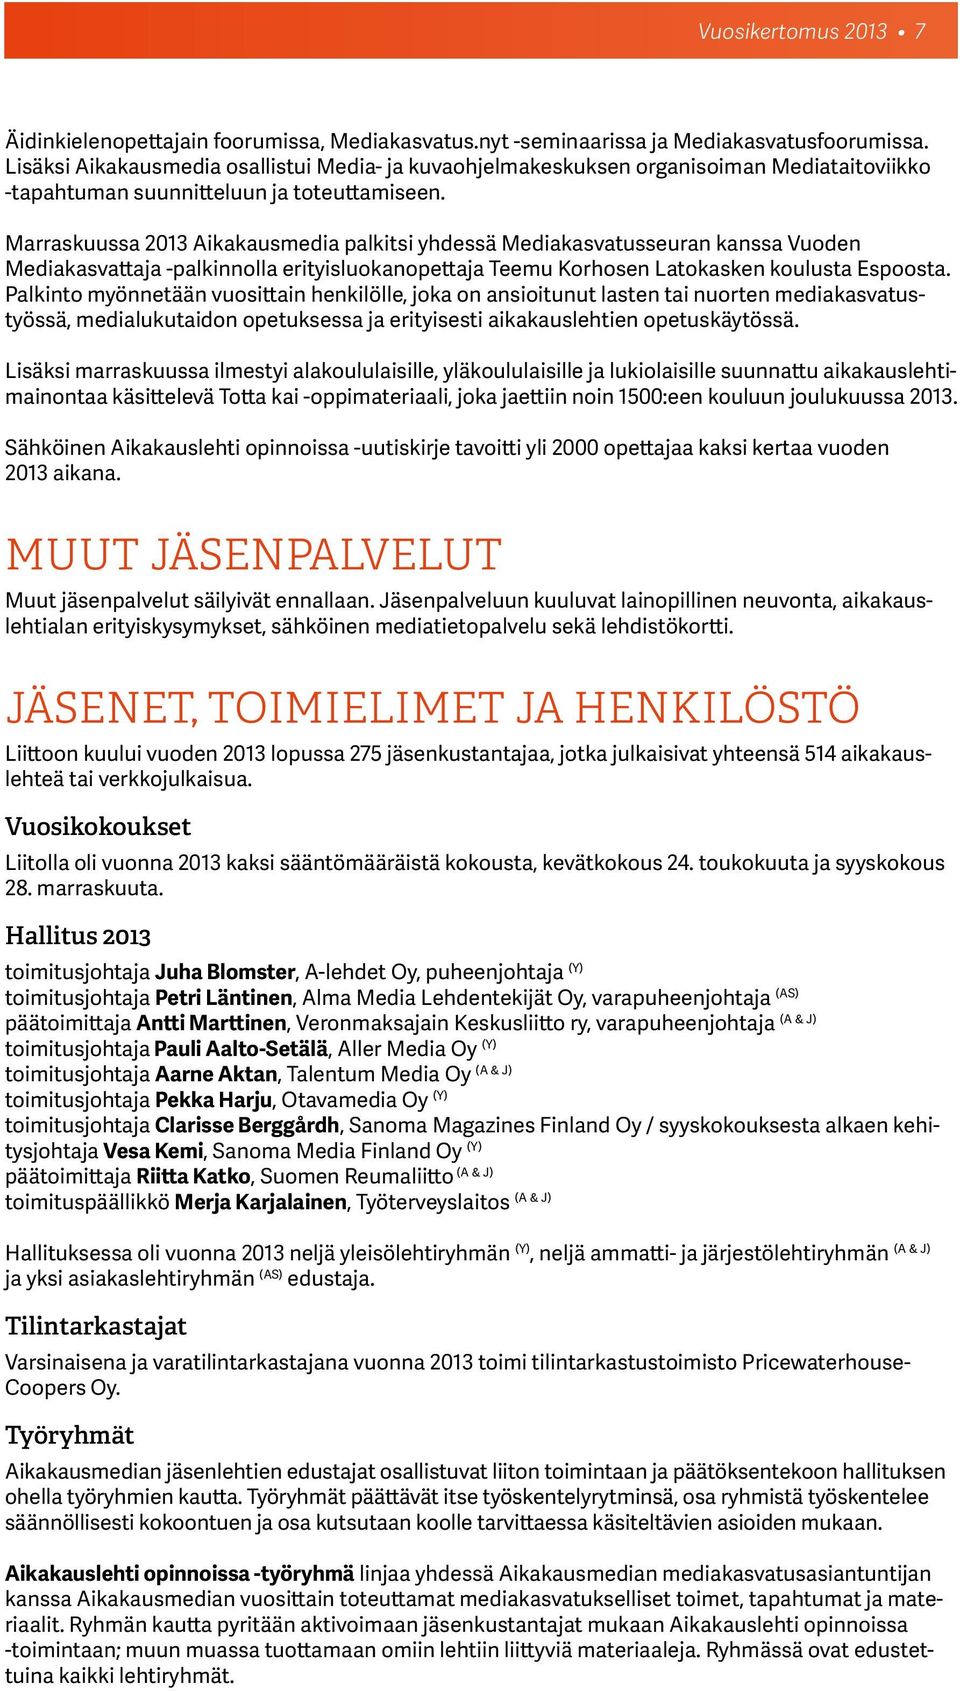 Marraskuussa 2013 Aikakausmedia palkitsi yhdessä Mediakasvatusseuran kanssa Vuoden Mediakasvattaja -palkinnolla erityisluokanopettaja Teemu Korhosen Latokasken koulusta Espoosta.